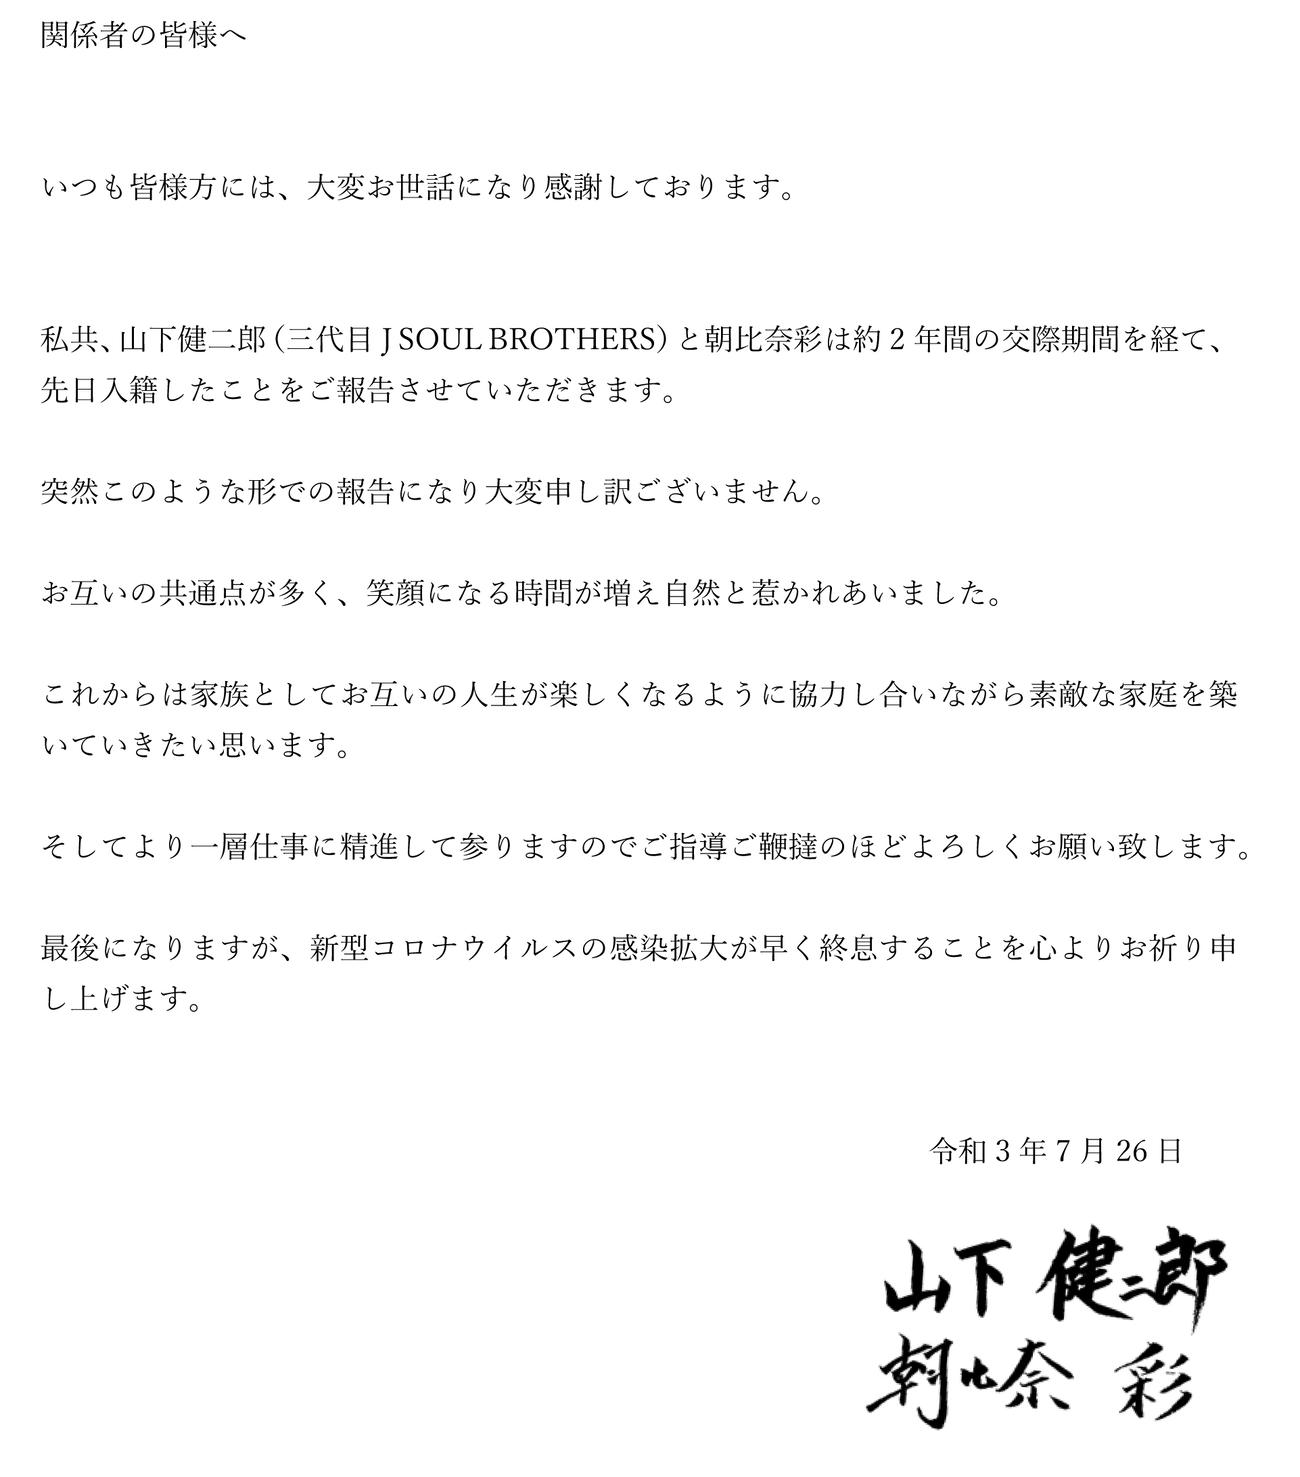 三代目　J SOUL BROTHERS山下健二郎と朝比奈彩が結婚を報告する文書